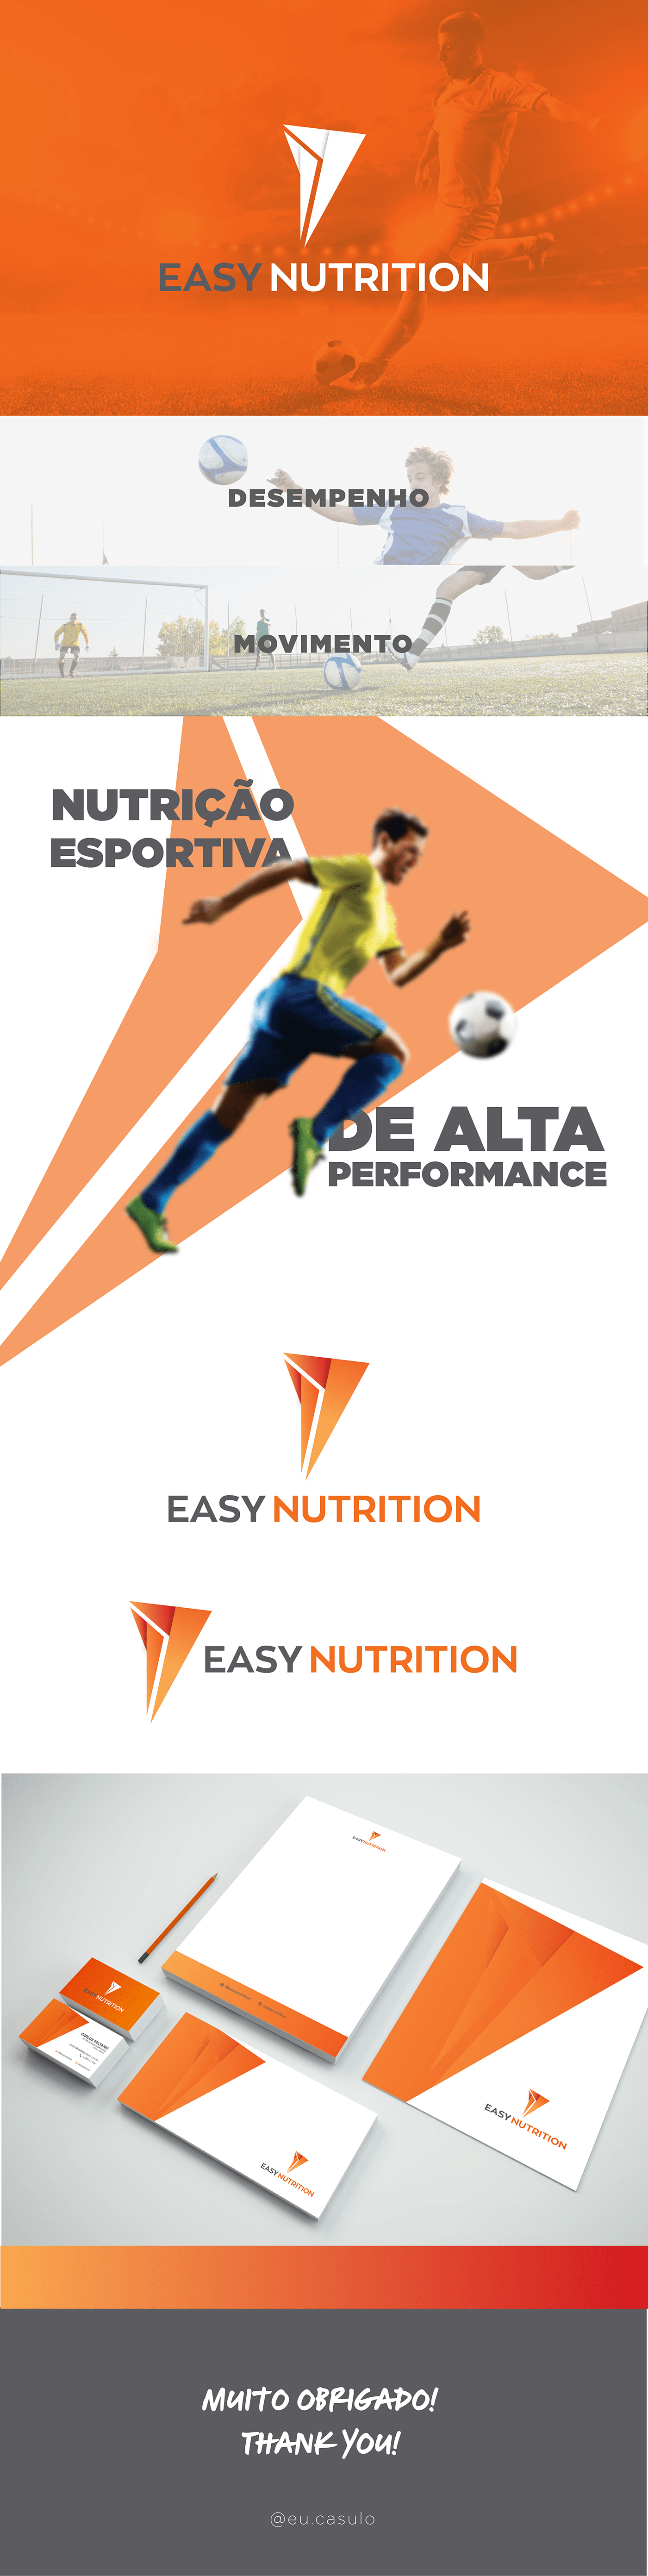 nutrição esportiva Nutrição nutricionista nutrition fitness workout gym brand identity Graphic Designer visual identity